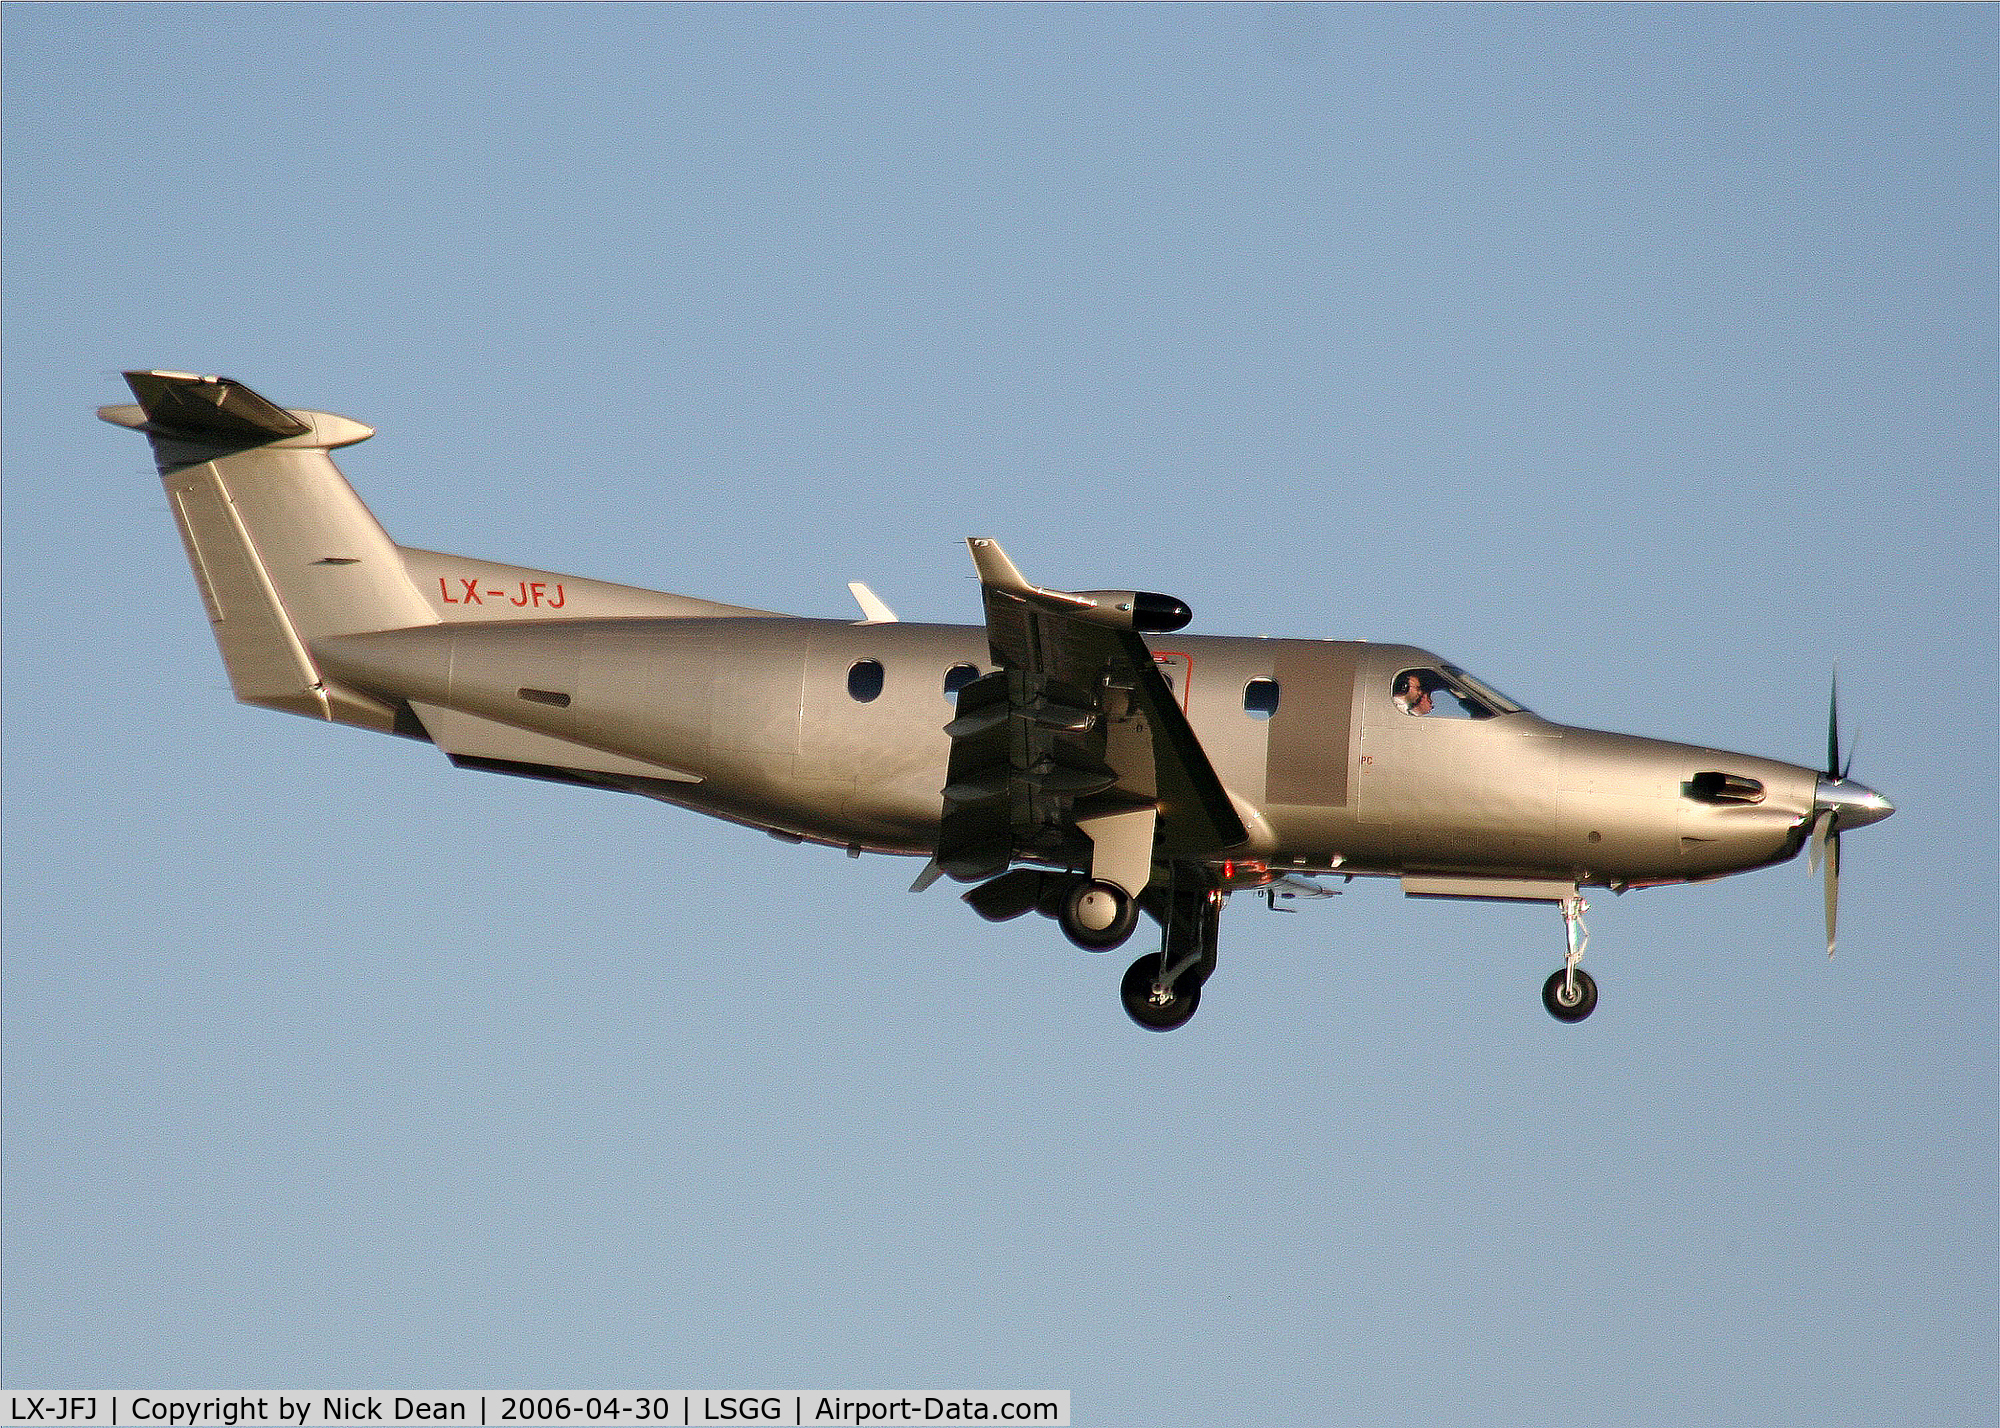 LX-JFJ, 2005 Pilatus PC-12/45 C/N 678, LSGG